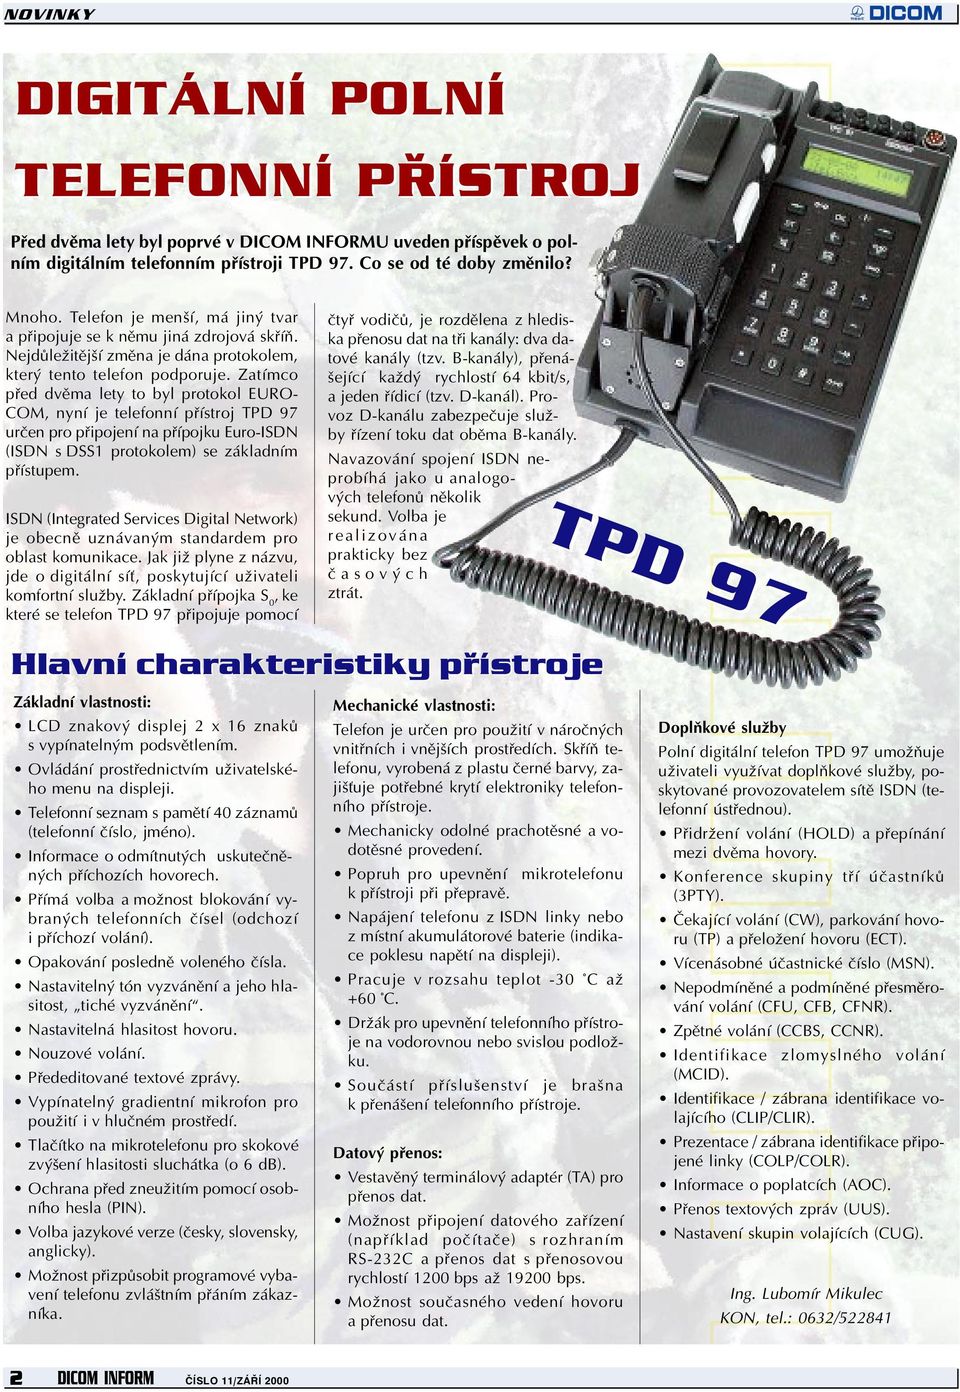 Zatímco pøed dvìma lety to byl protokol EURO- COM, nyní je telefonní pøístroj TPD 97 urèen pro pøipojení na pøípojku Euro-ISDN (ISDN s DSS1 protokolem) se základním pøístupem.